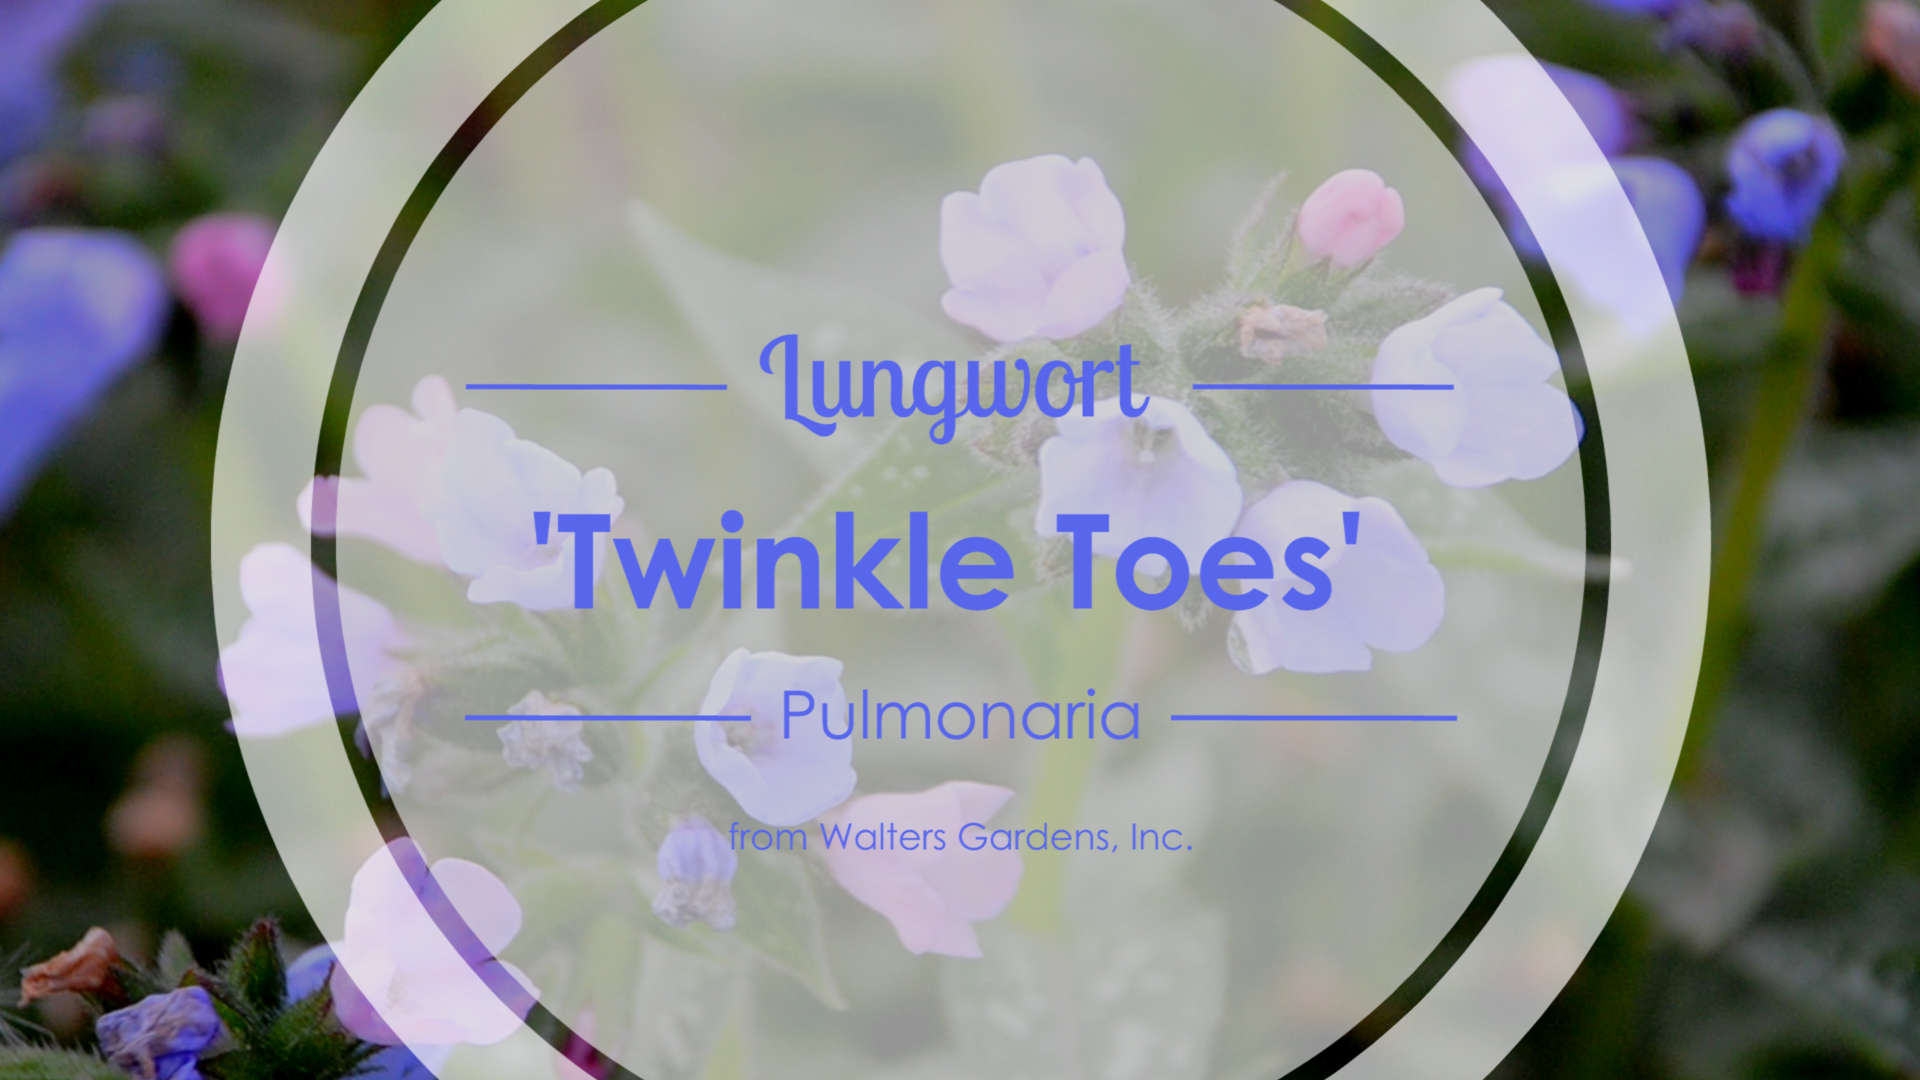 Pulmonaria 'Twinkle Toes' Lungwort